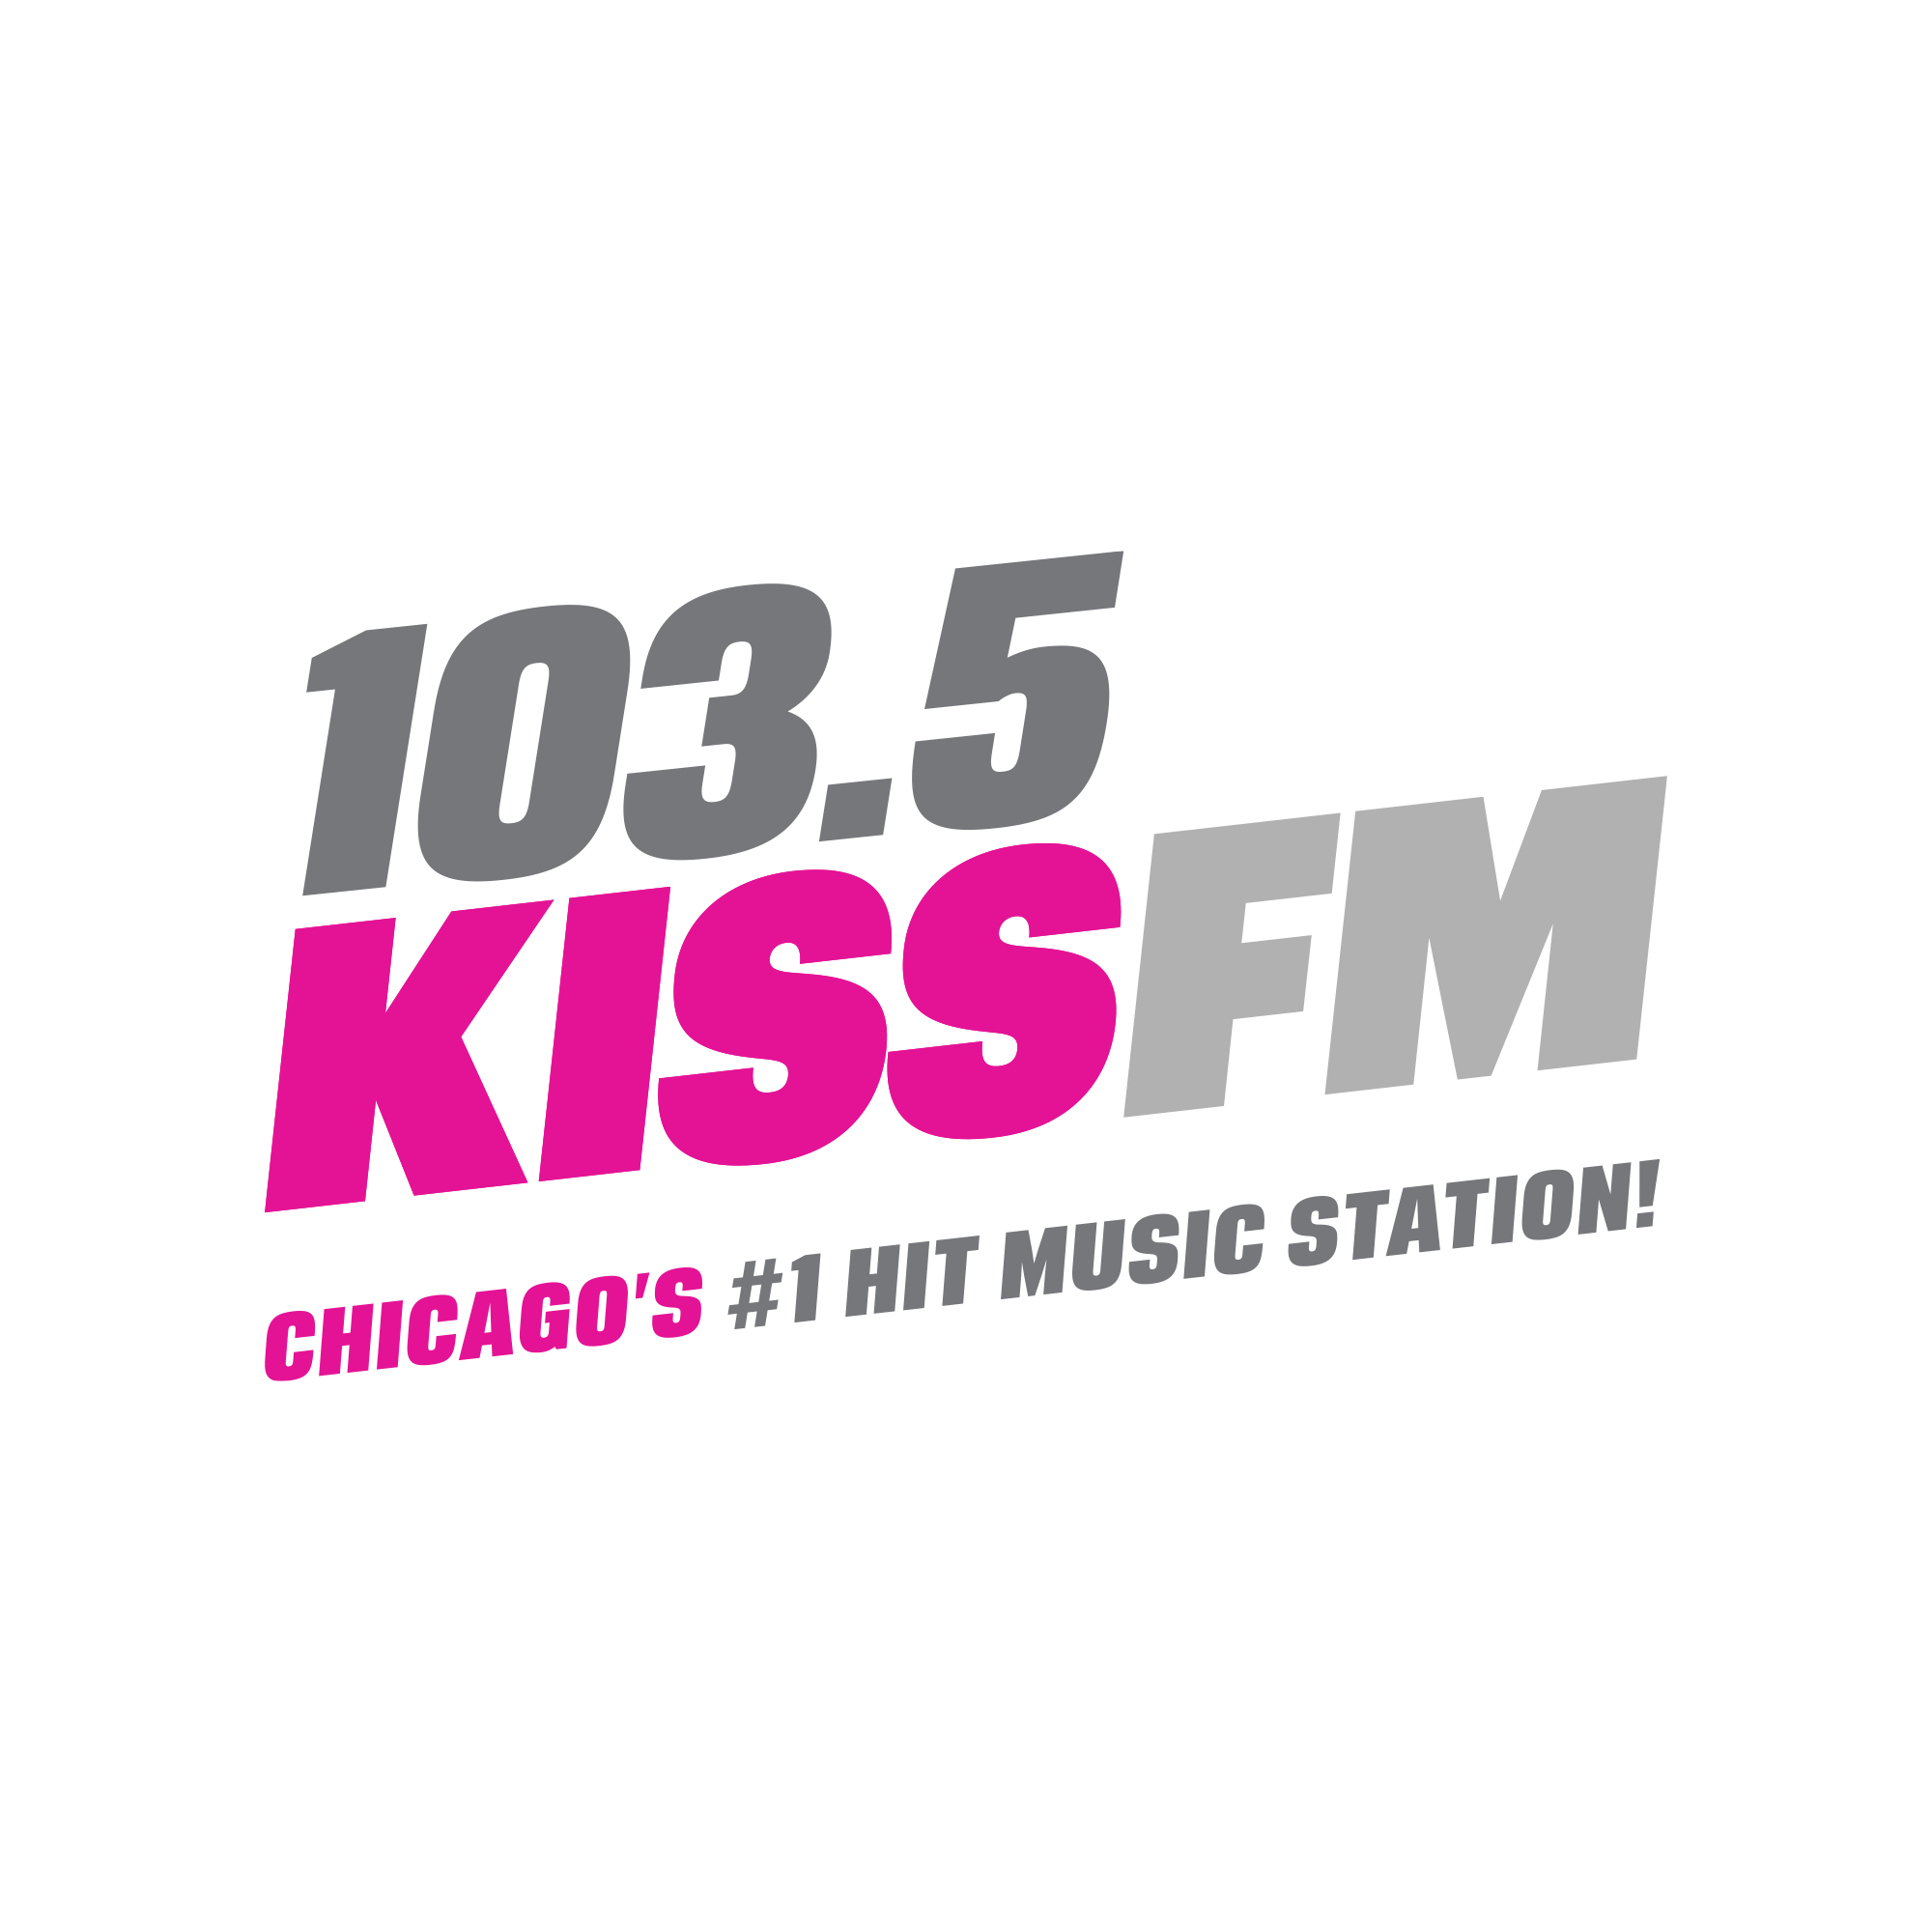 e. 103.5 KISS FM